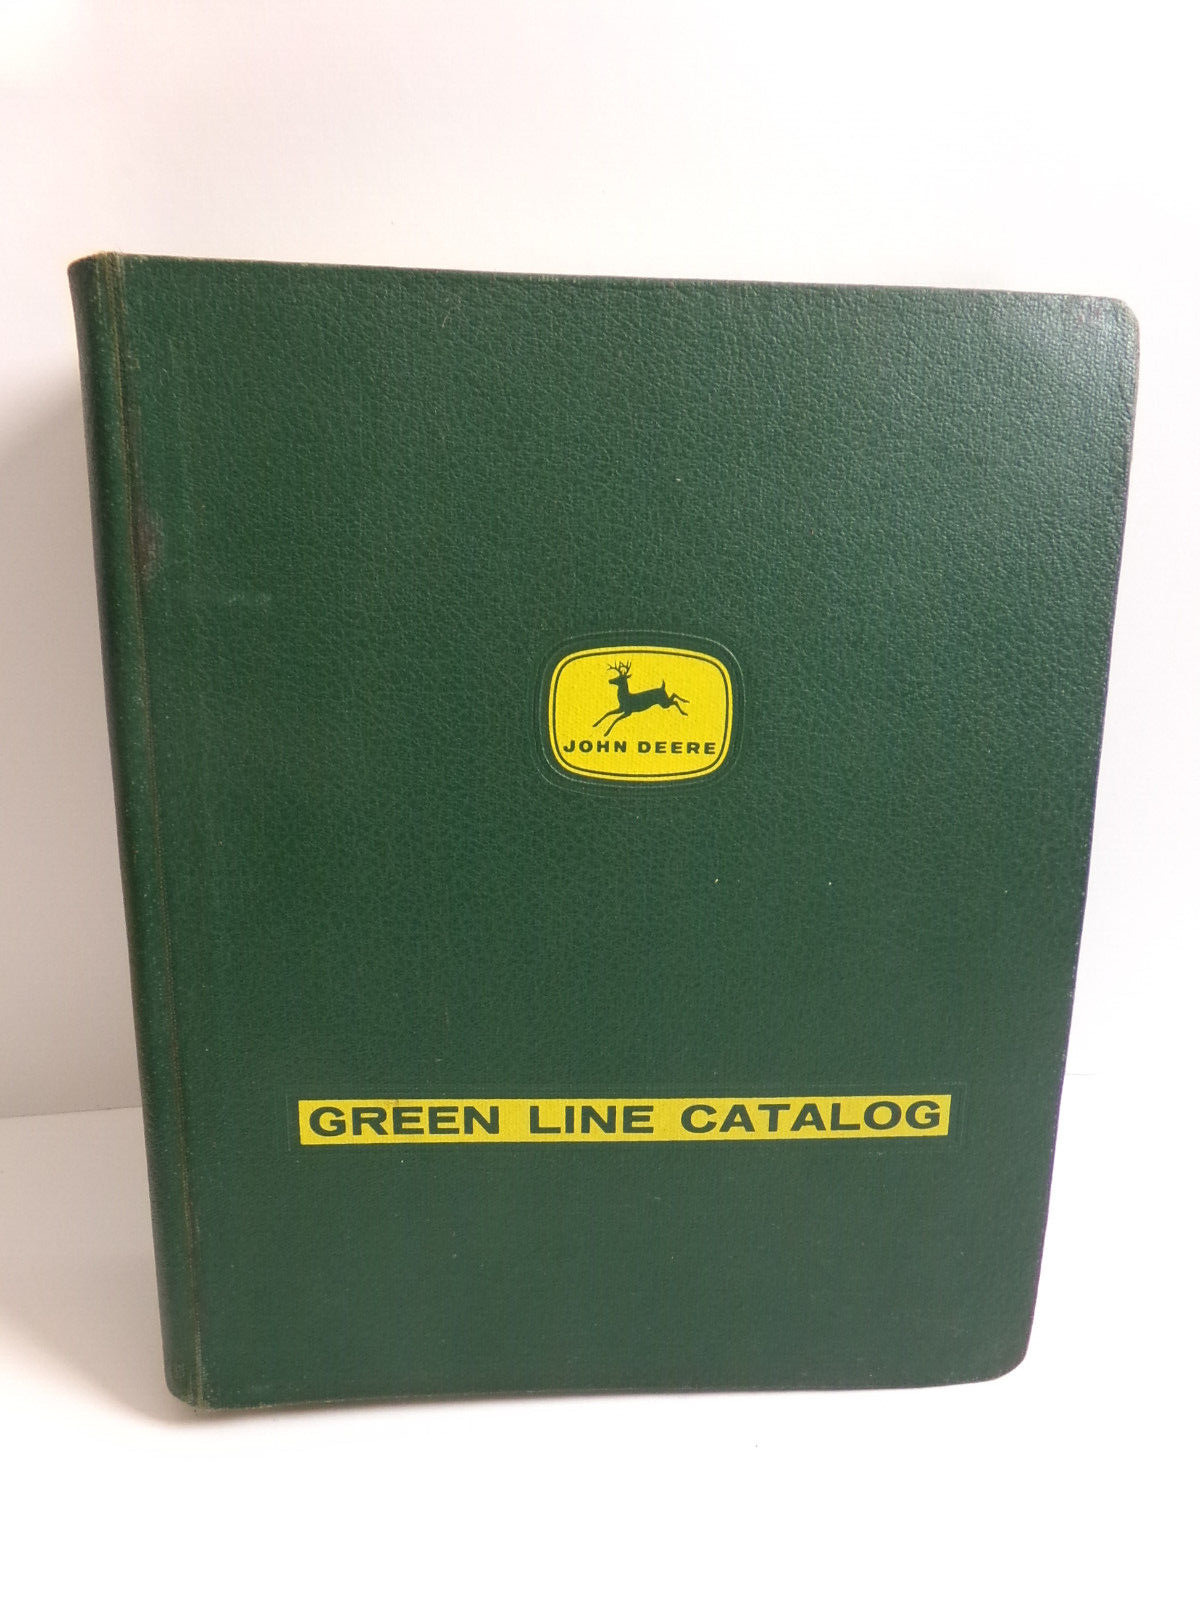 Vintage 1960's John Deere Dealer Only Green Line Catalog with binder